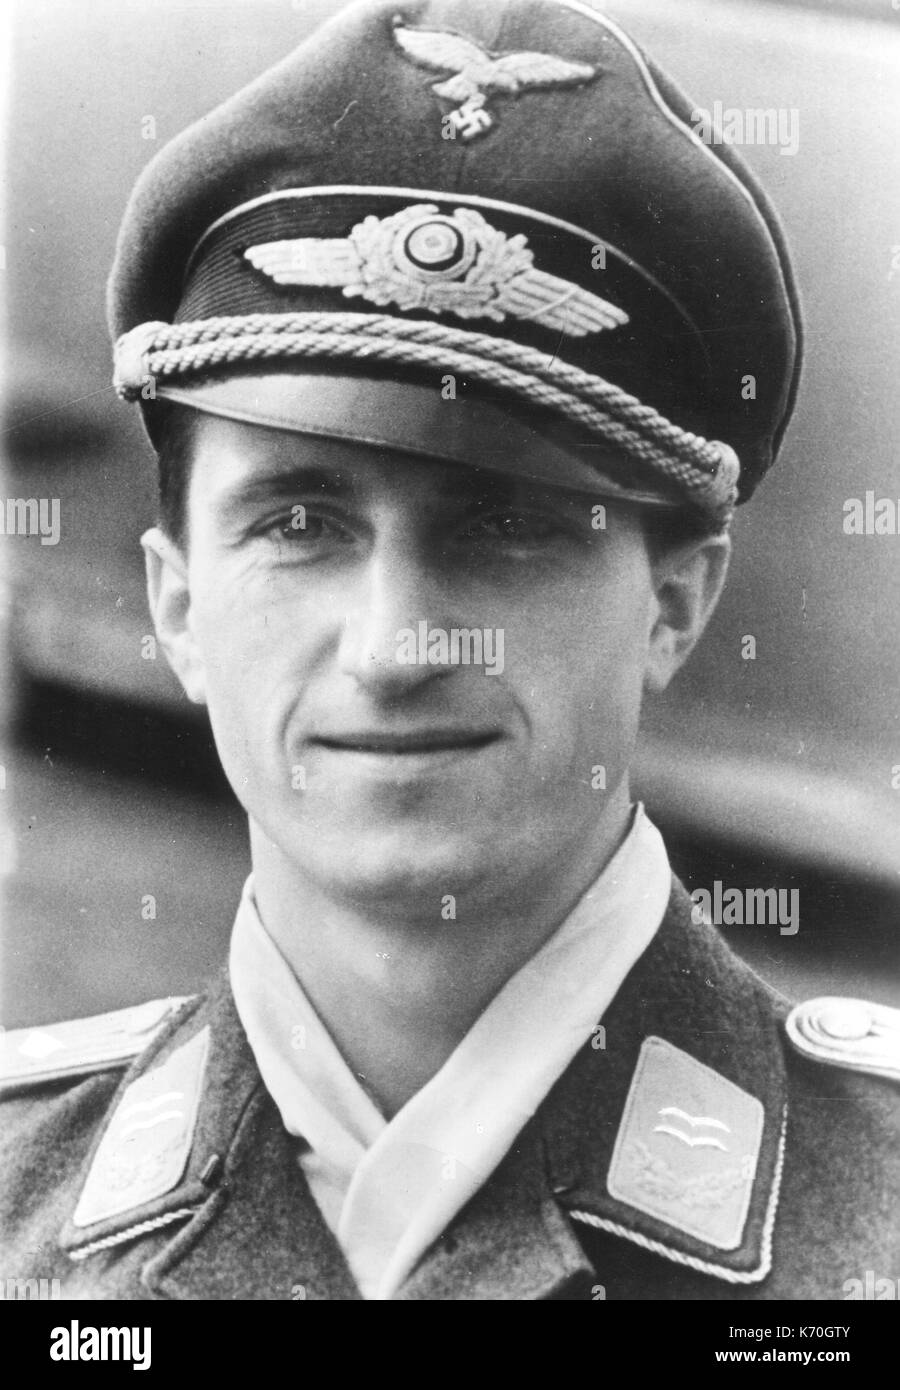 Walter Nowotny (1920-1944) era un austriaco-nato tedesco fighter ace della II Guerra Mondiale. Egli ha testato il Messerschmitt Me 262 jet da combattimento ed è stato ucciso in un incidente in questo aeromobile a seguito di combattimento aereo con AAF fighters il 8 novembre 1944. Nessuna data o posizione. Foto Stock